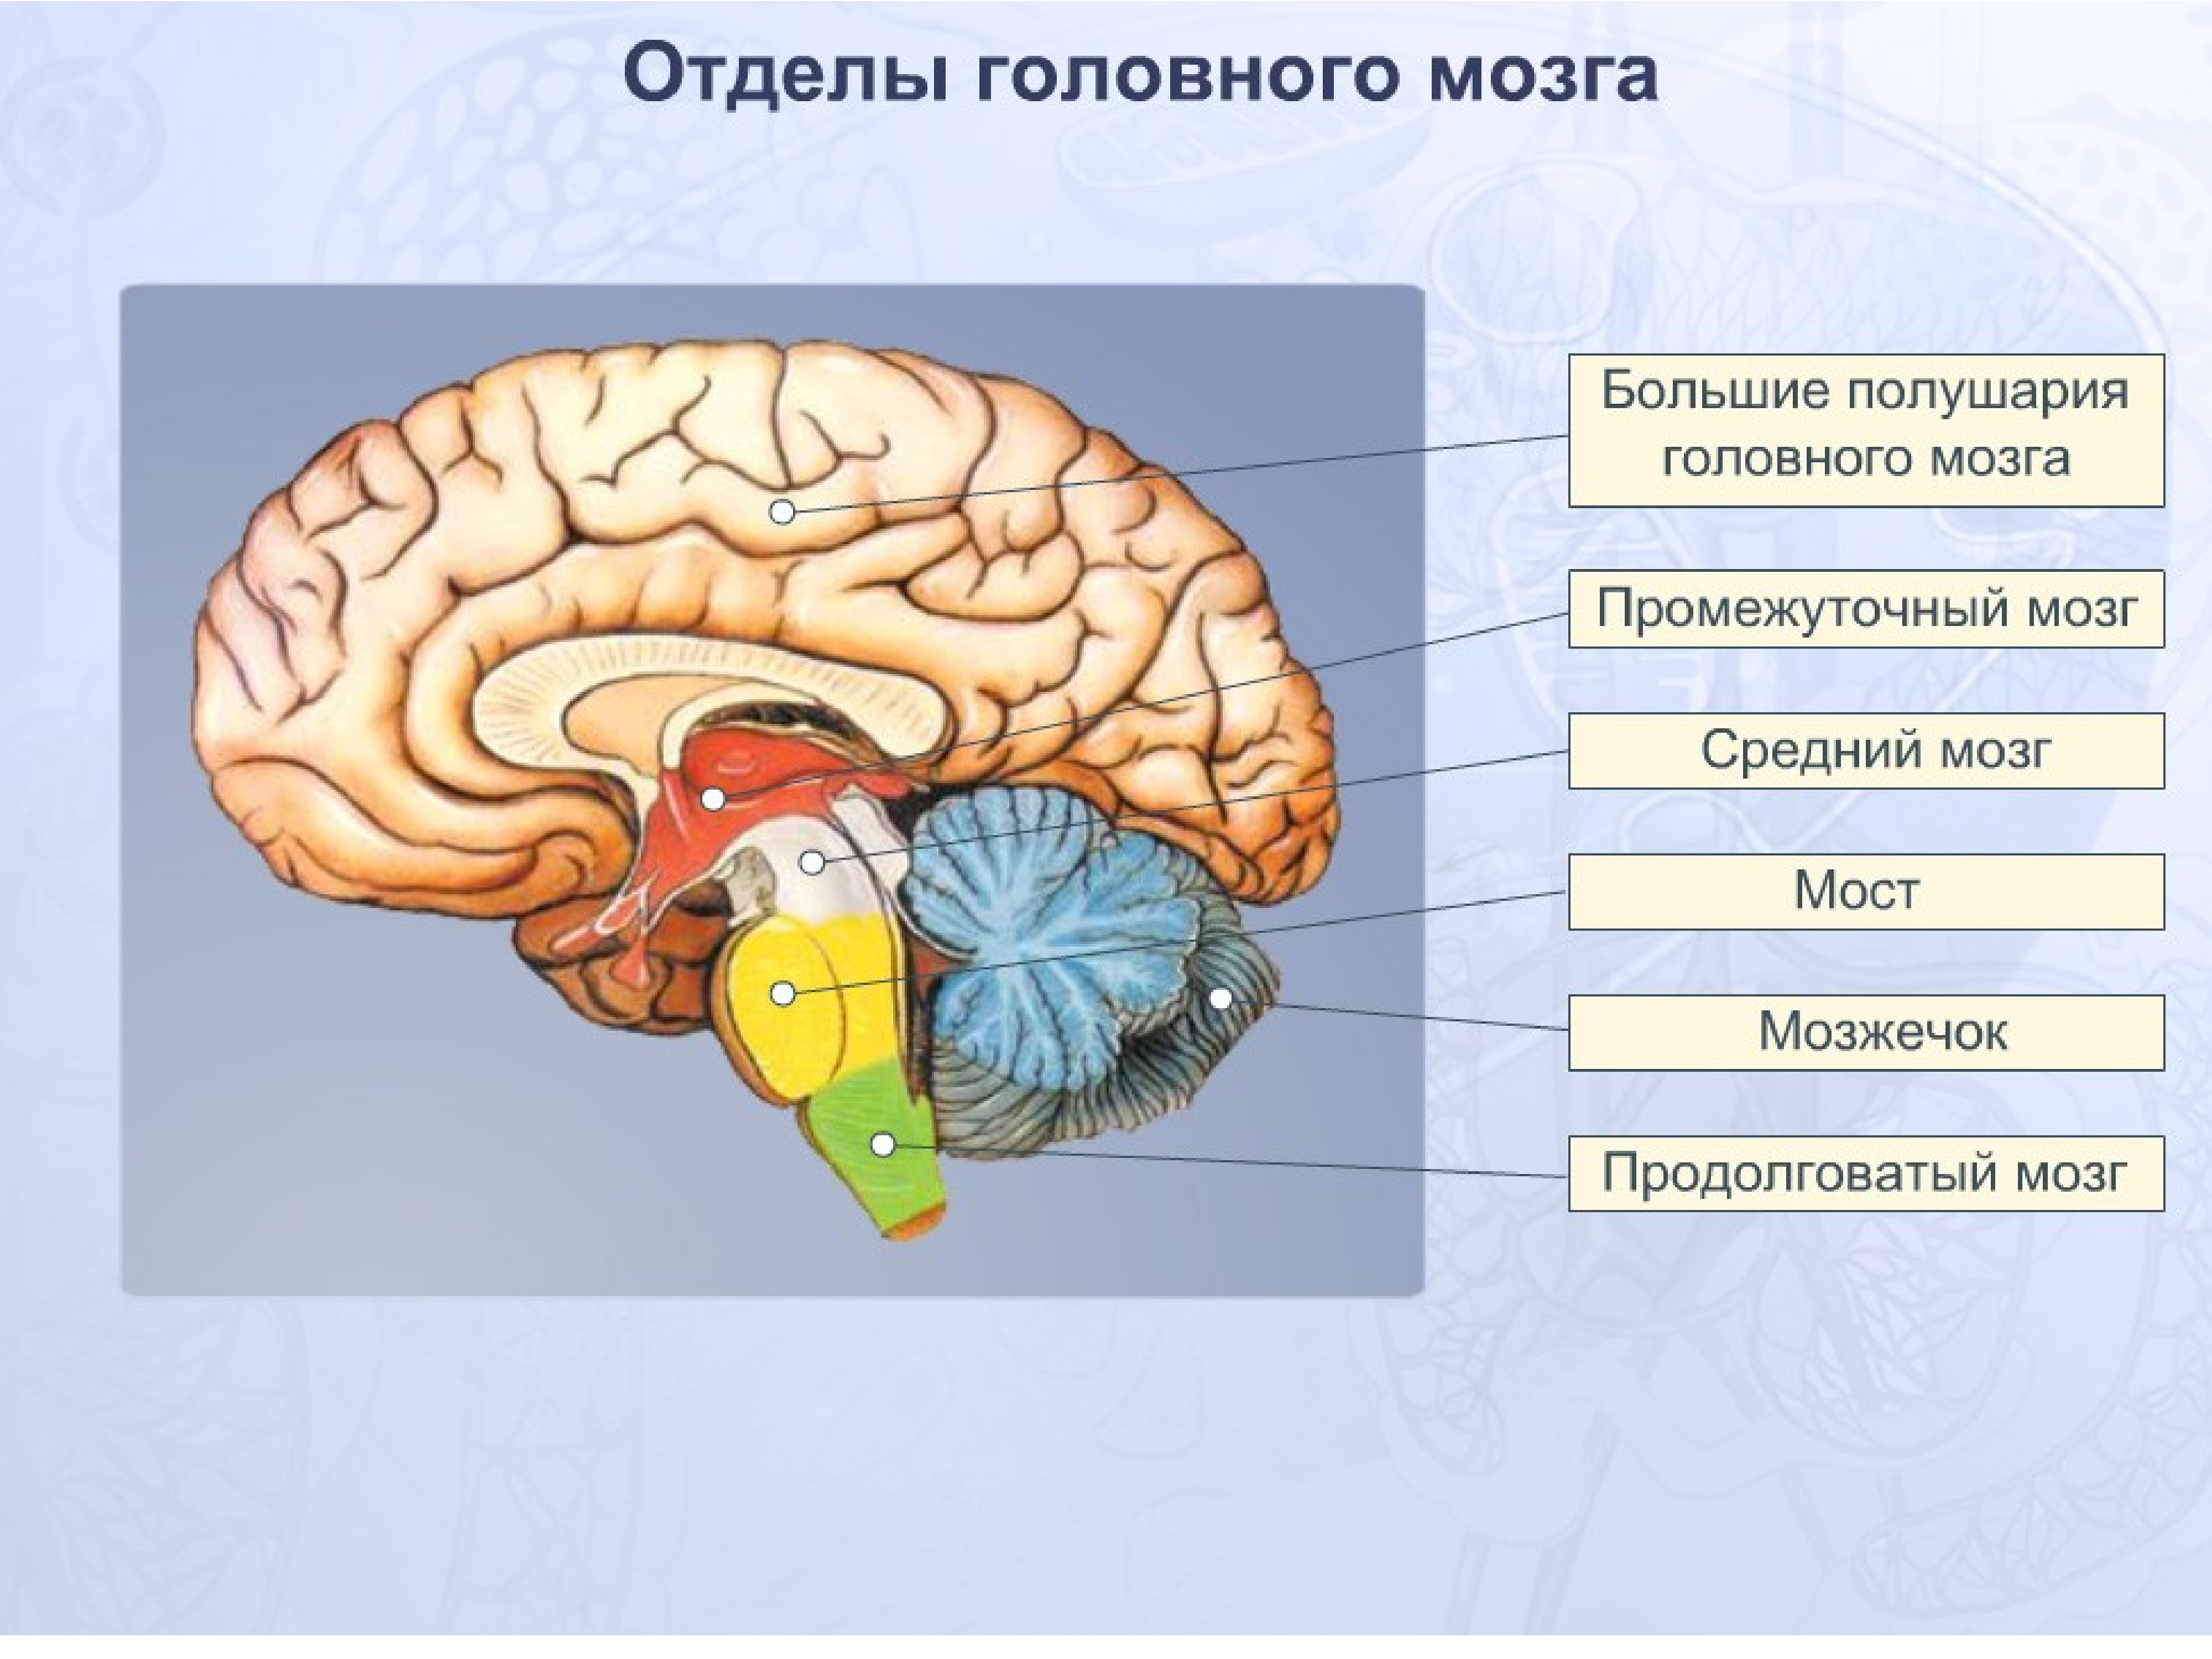 Указать функции отделов мозга